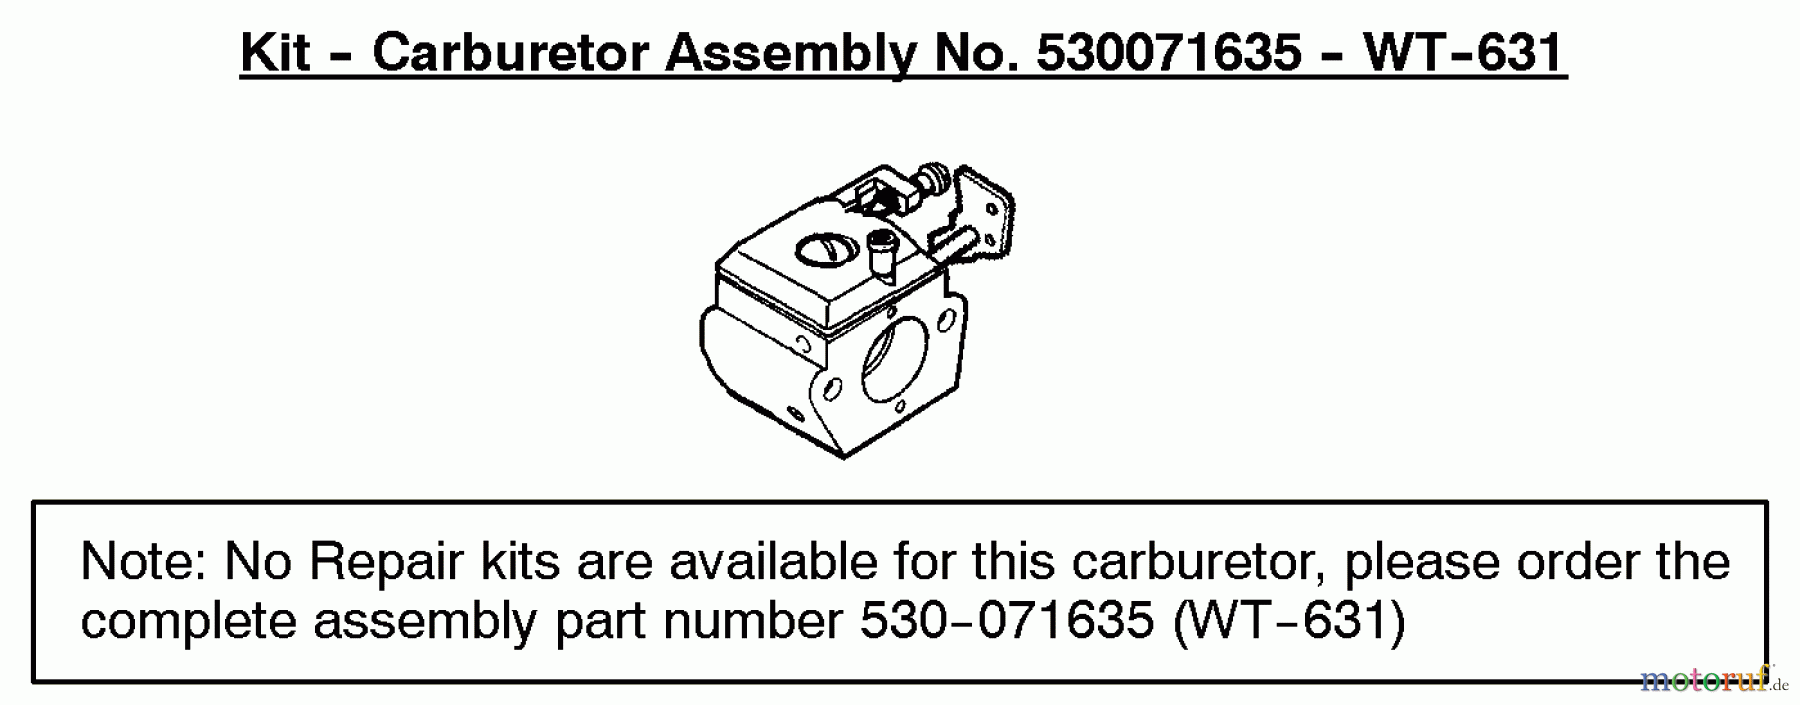  Poulan / Weed Eater Motorsensen, Trimmer PL500 (Type 1) - Weed Eater String Trimmer Carburetor Assembly (WT631) P/N 530071635